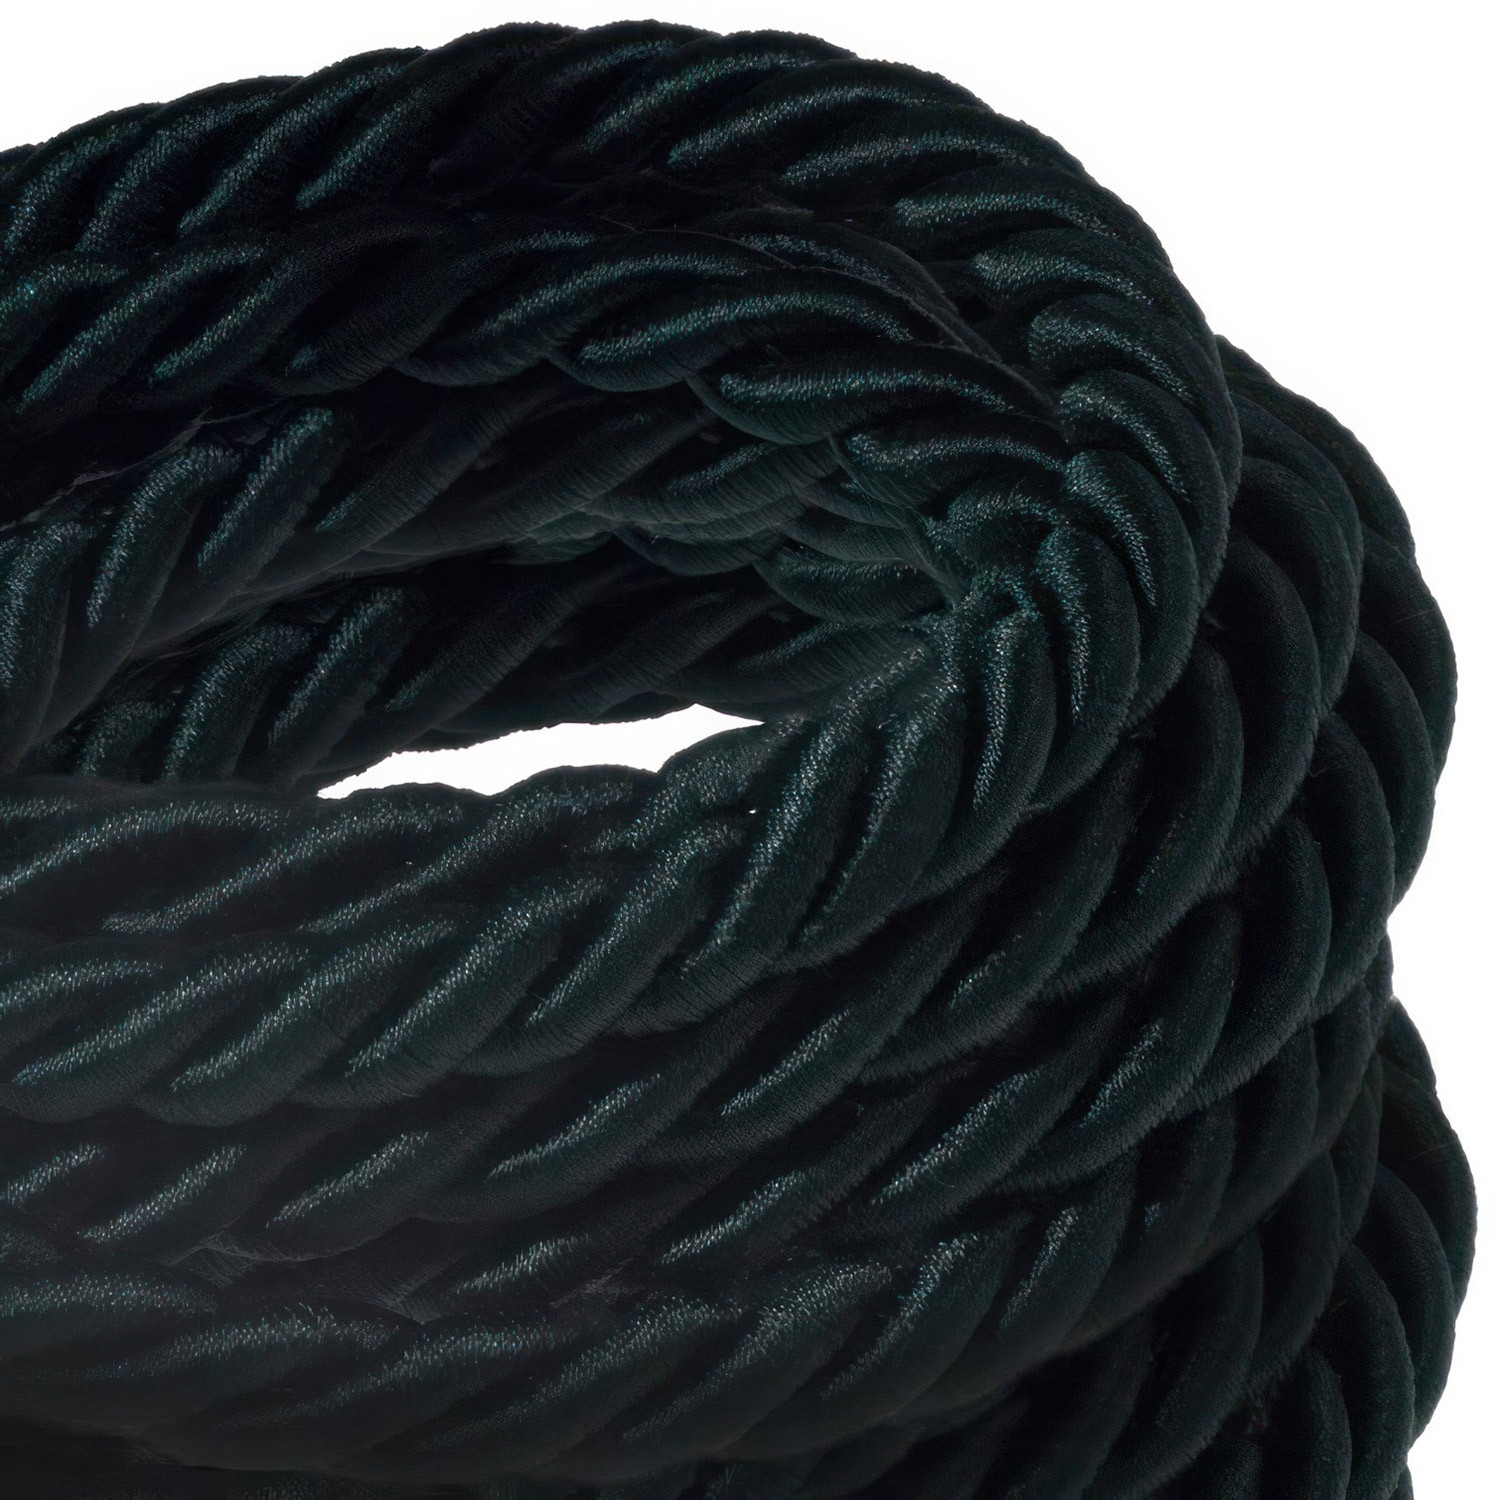 Cordón XL, cable eléctrico 3x0,75, recubierto en tejido verde oscuro brillante. Diámetro: 16mm.